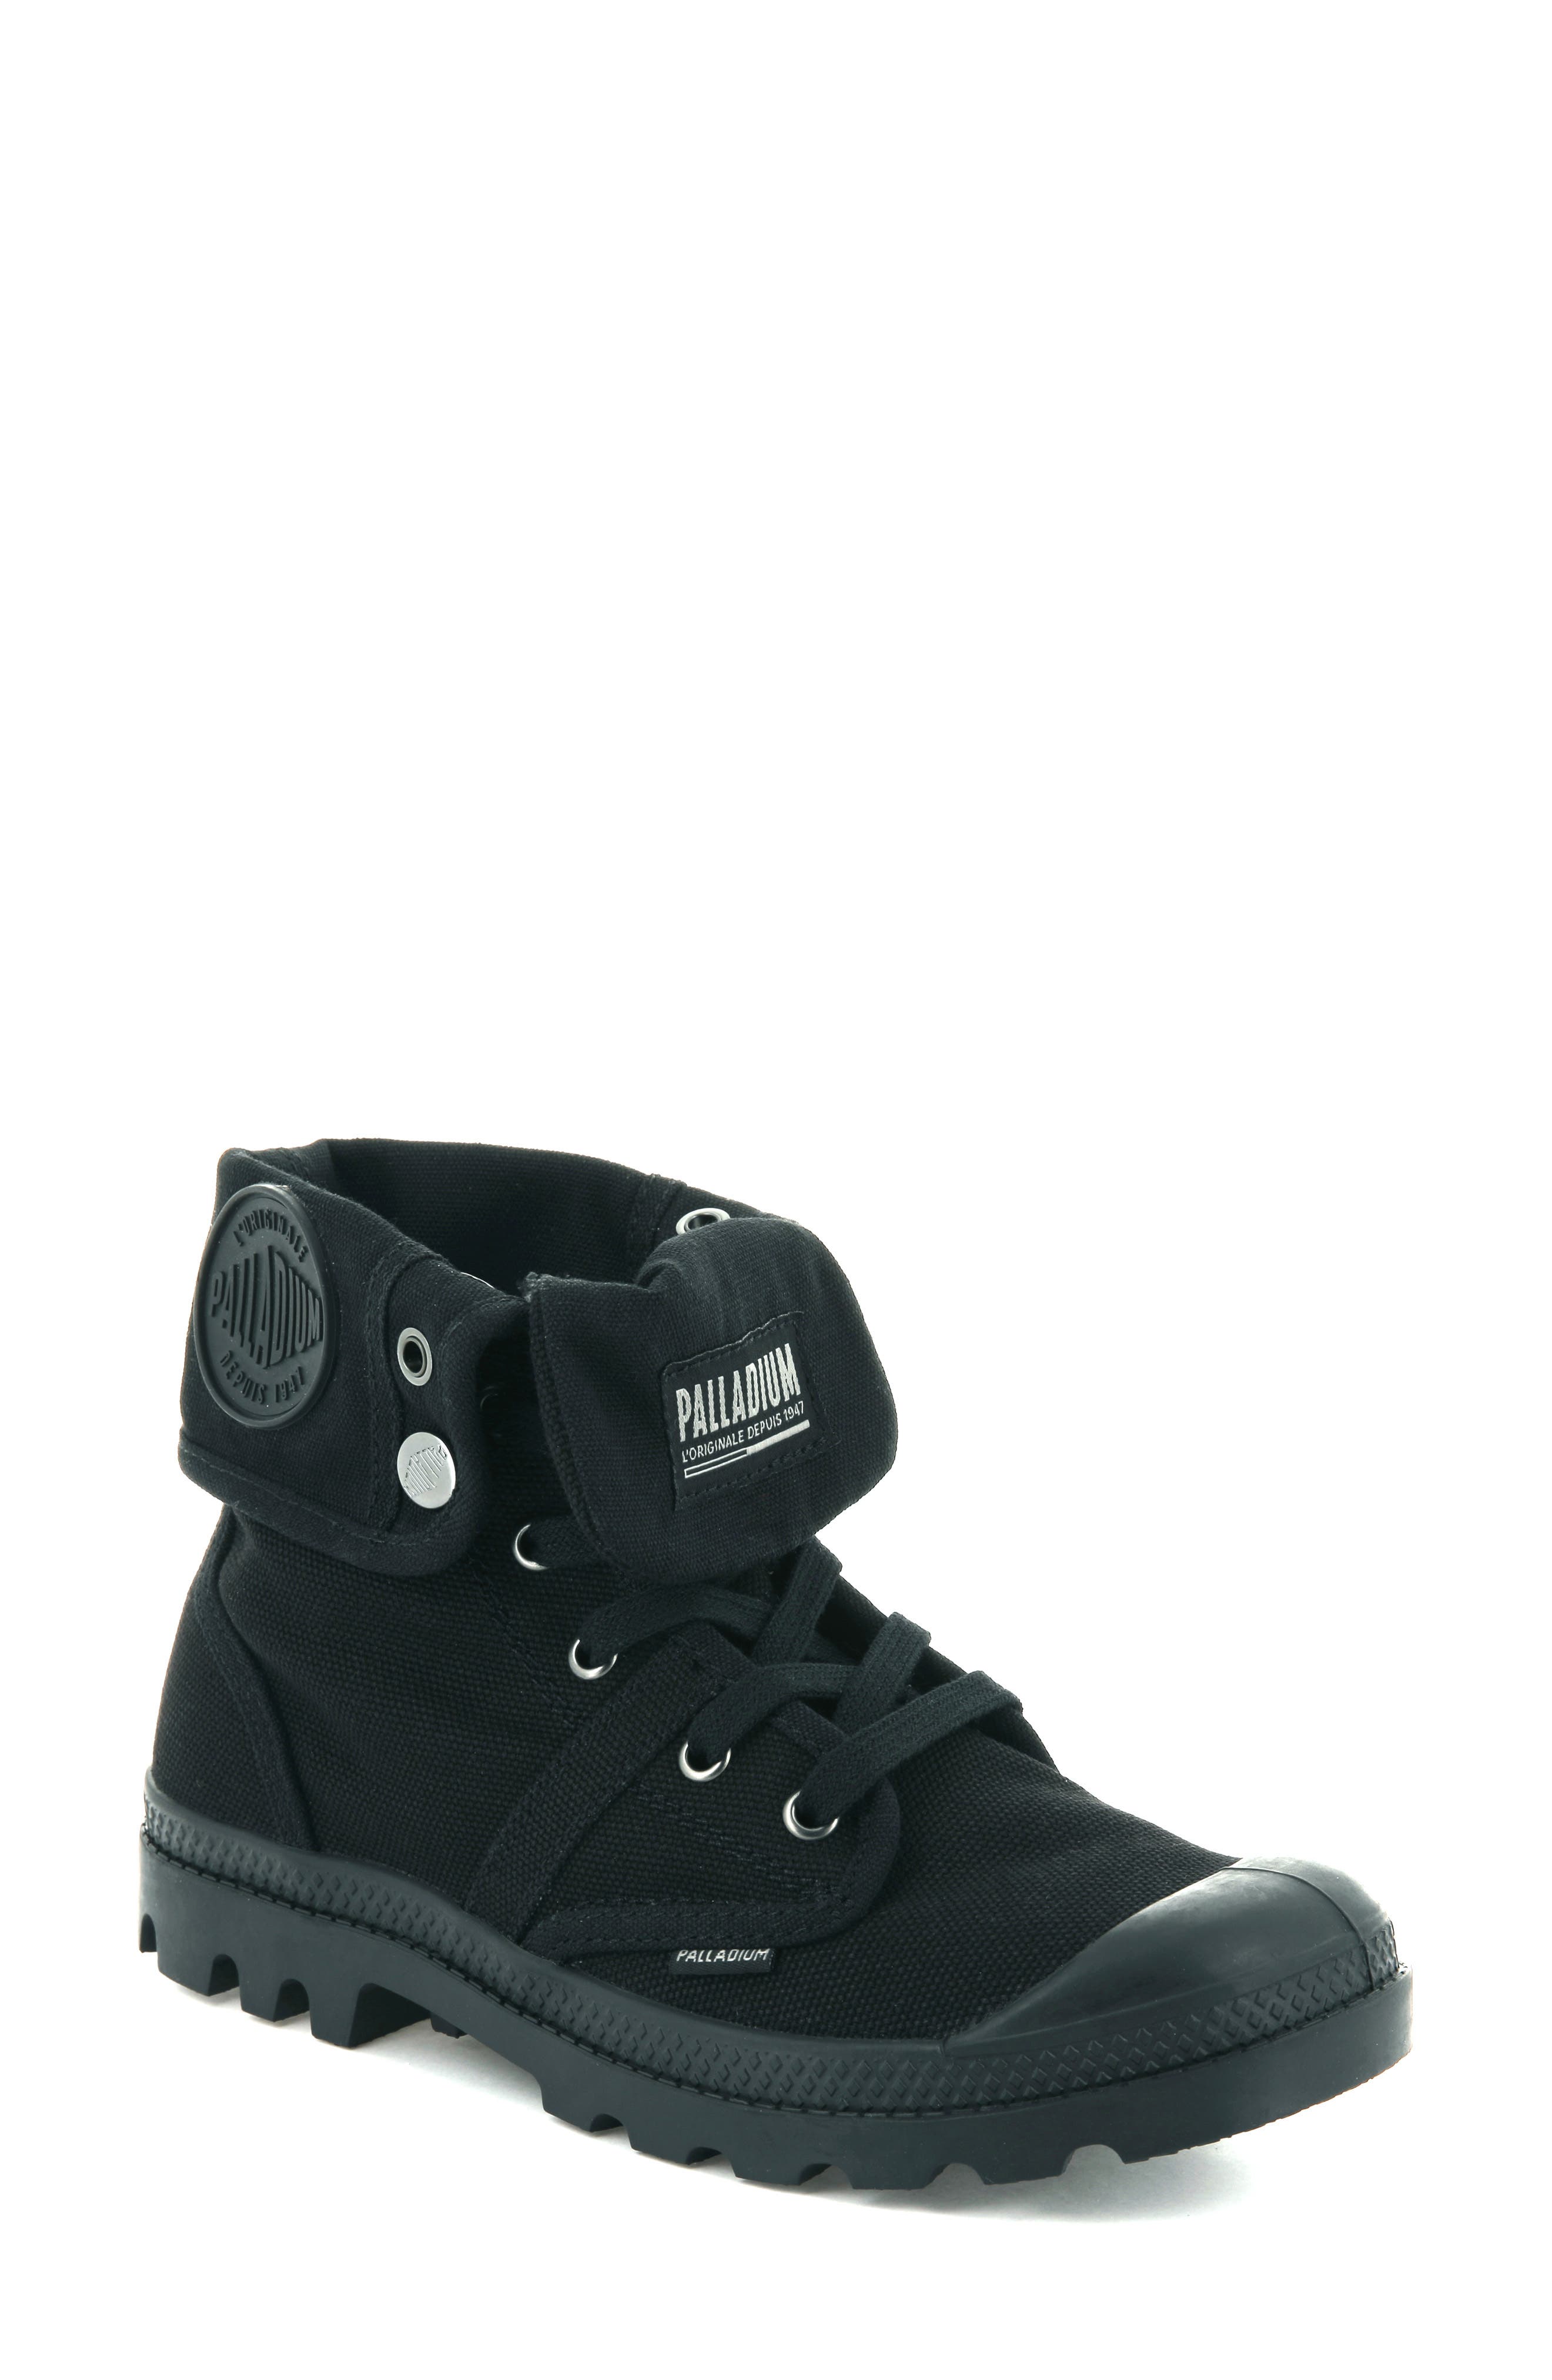 Palladium Flex Baggy Navy Marshmallow Womens Sneaker Boots 93460 056 